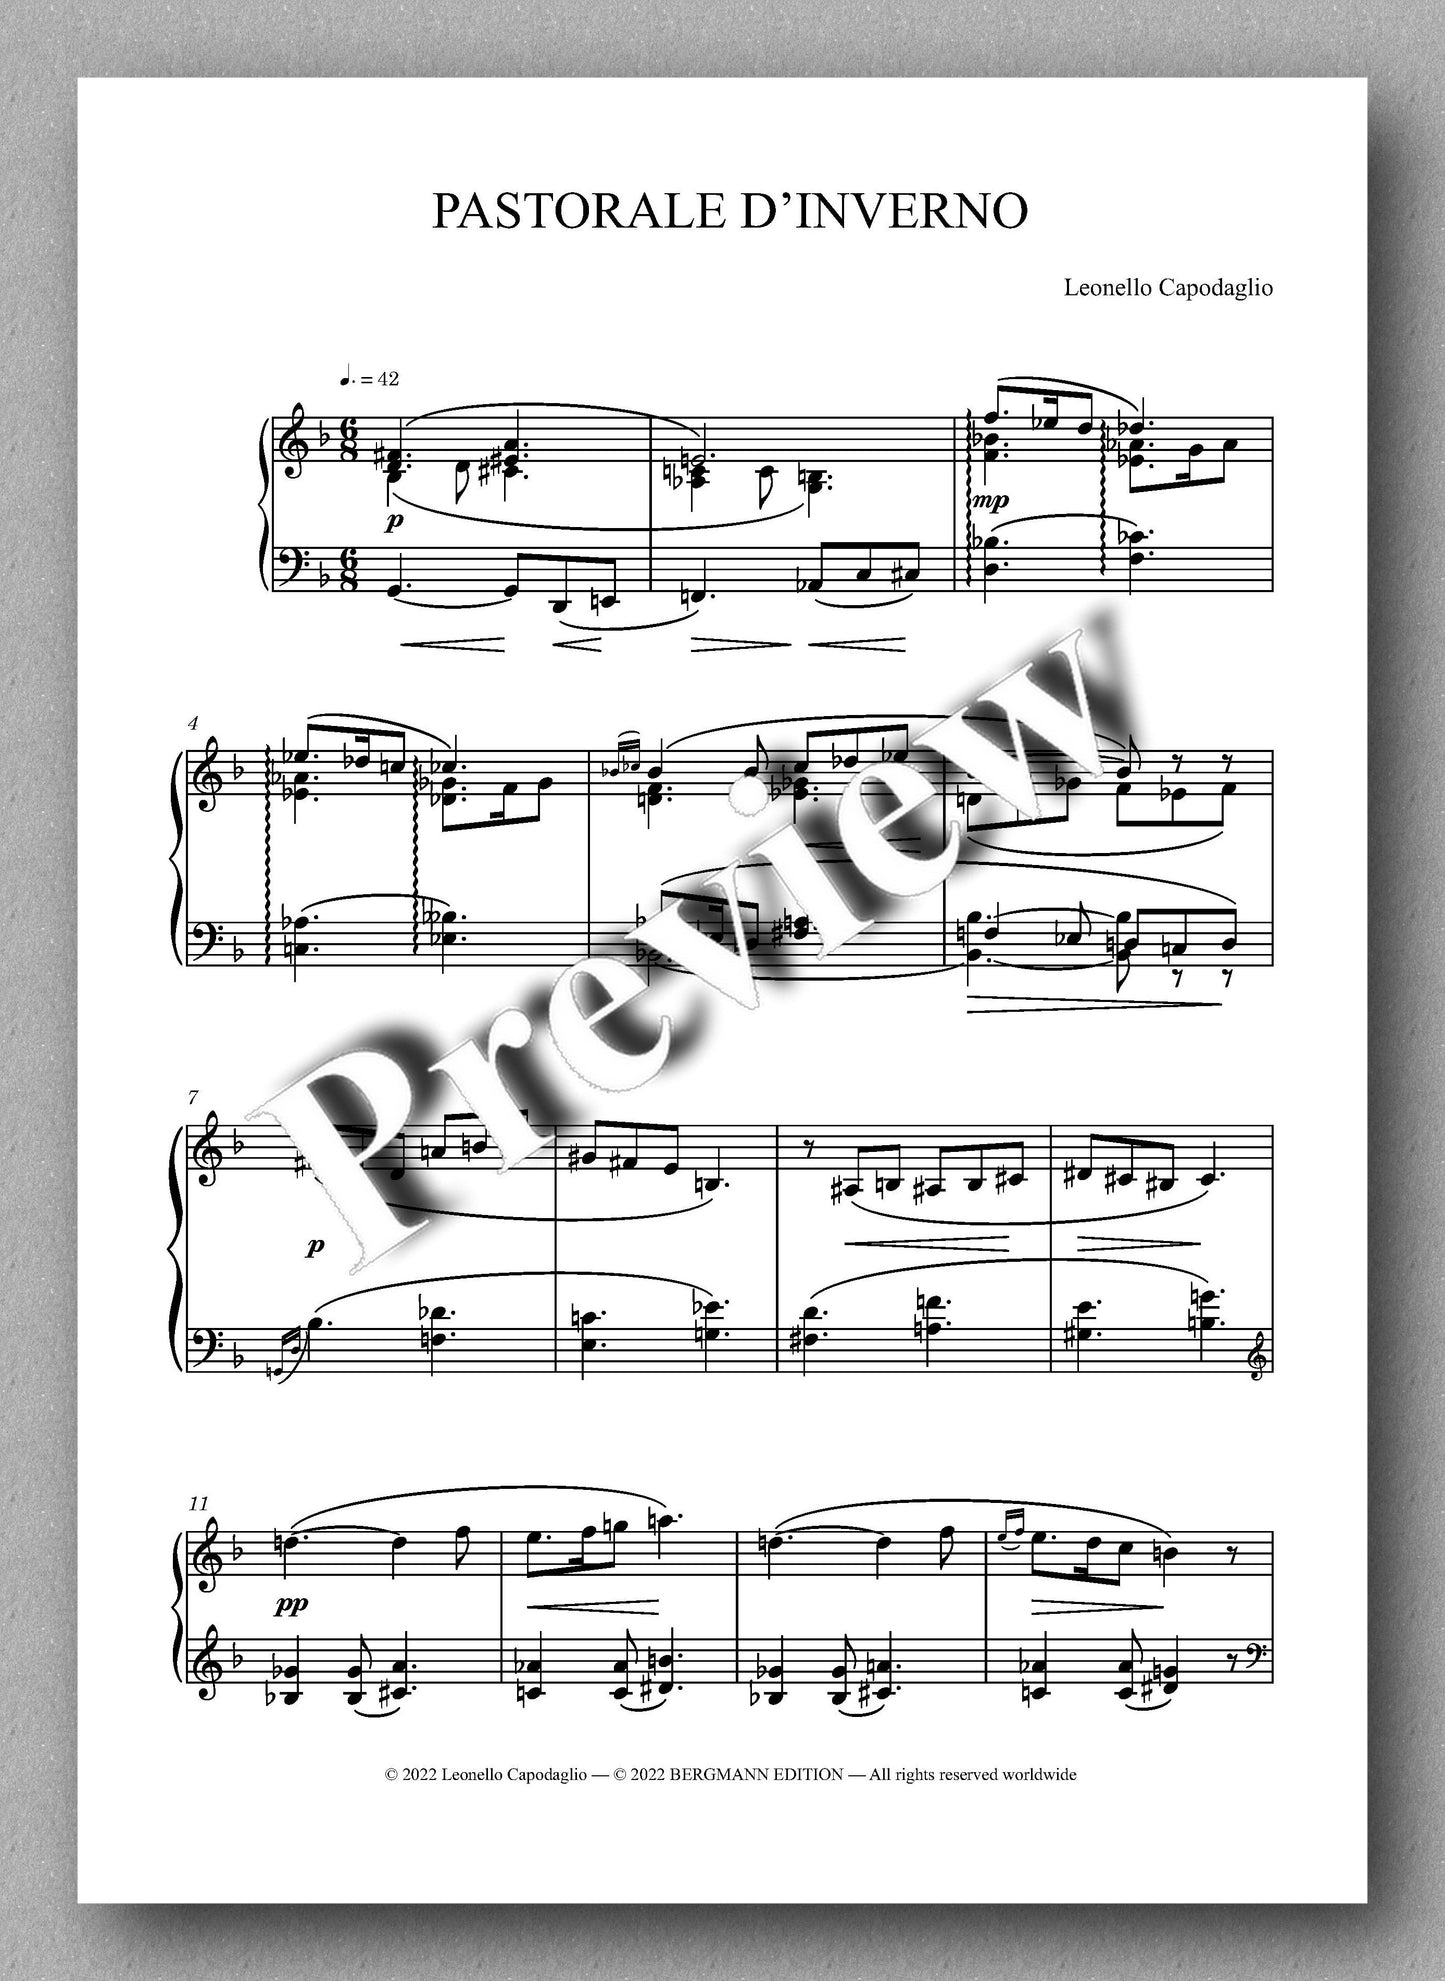 PASTORALE D’INVERNO, op. 442 by  Leonello Capodaglio -  preview of the music score 1